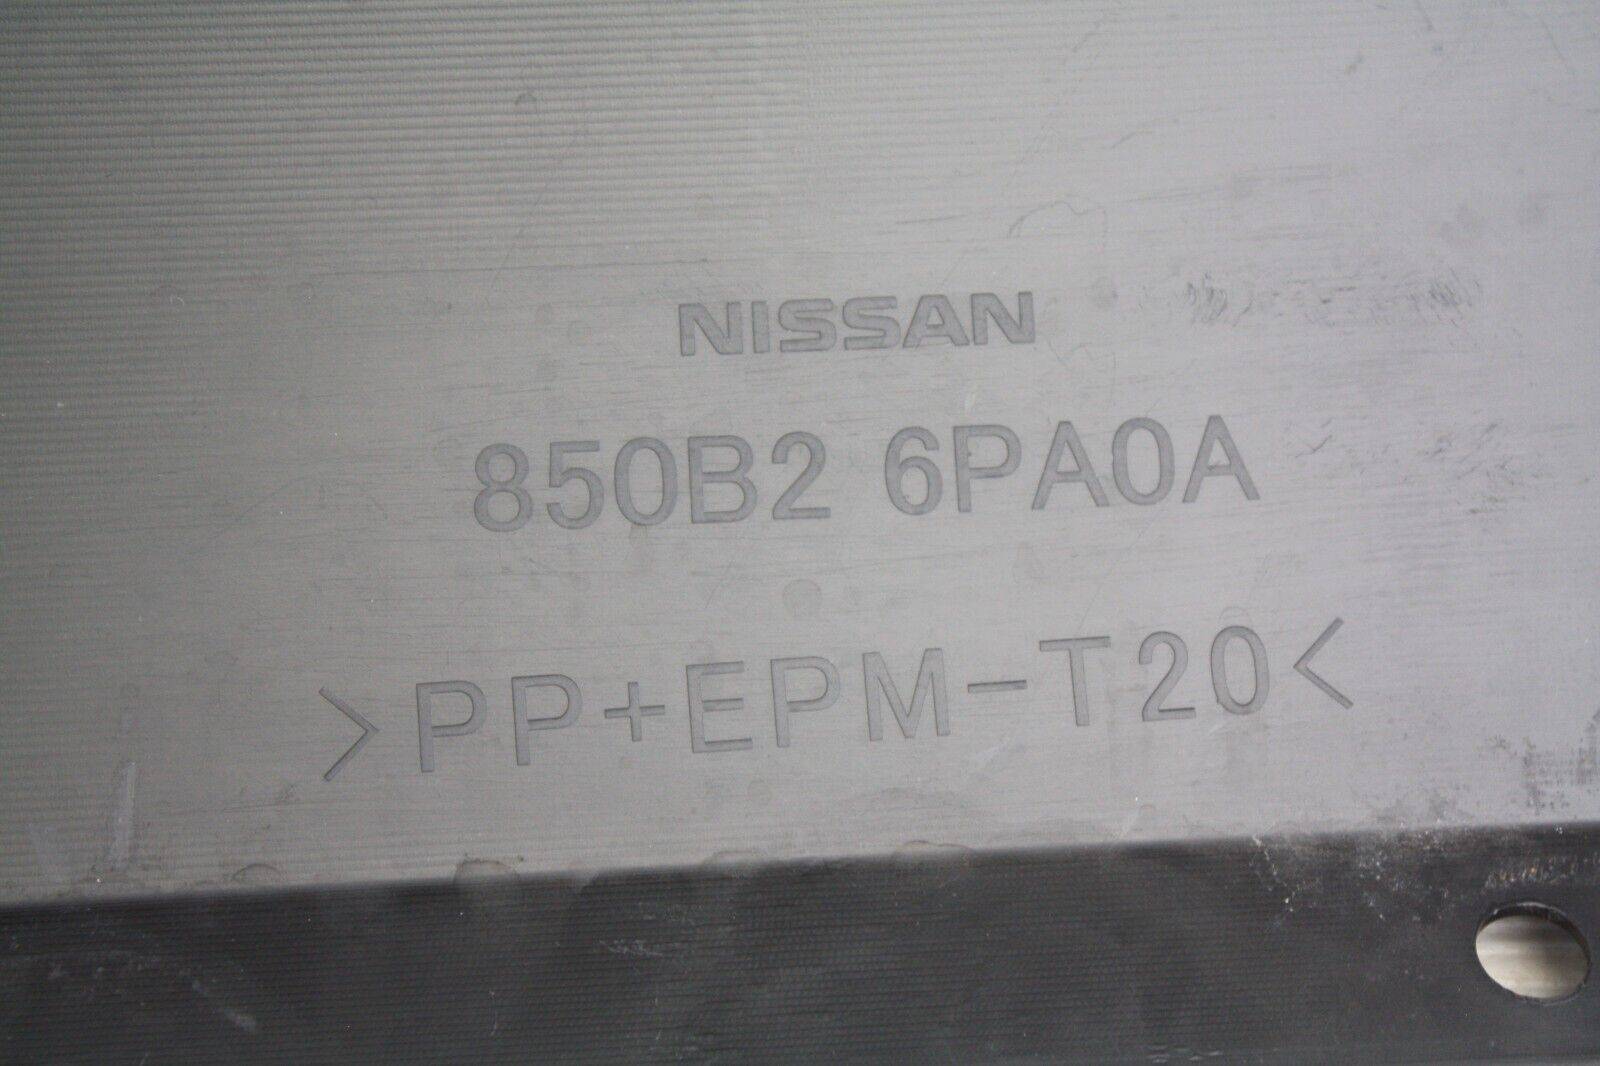 Nissan-Juke-F16-Rear-Bumper-Lower-Section-2019-ON-850B2-6PA0A-Genuine-175952218394-14